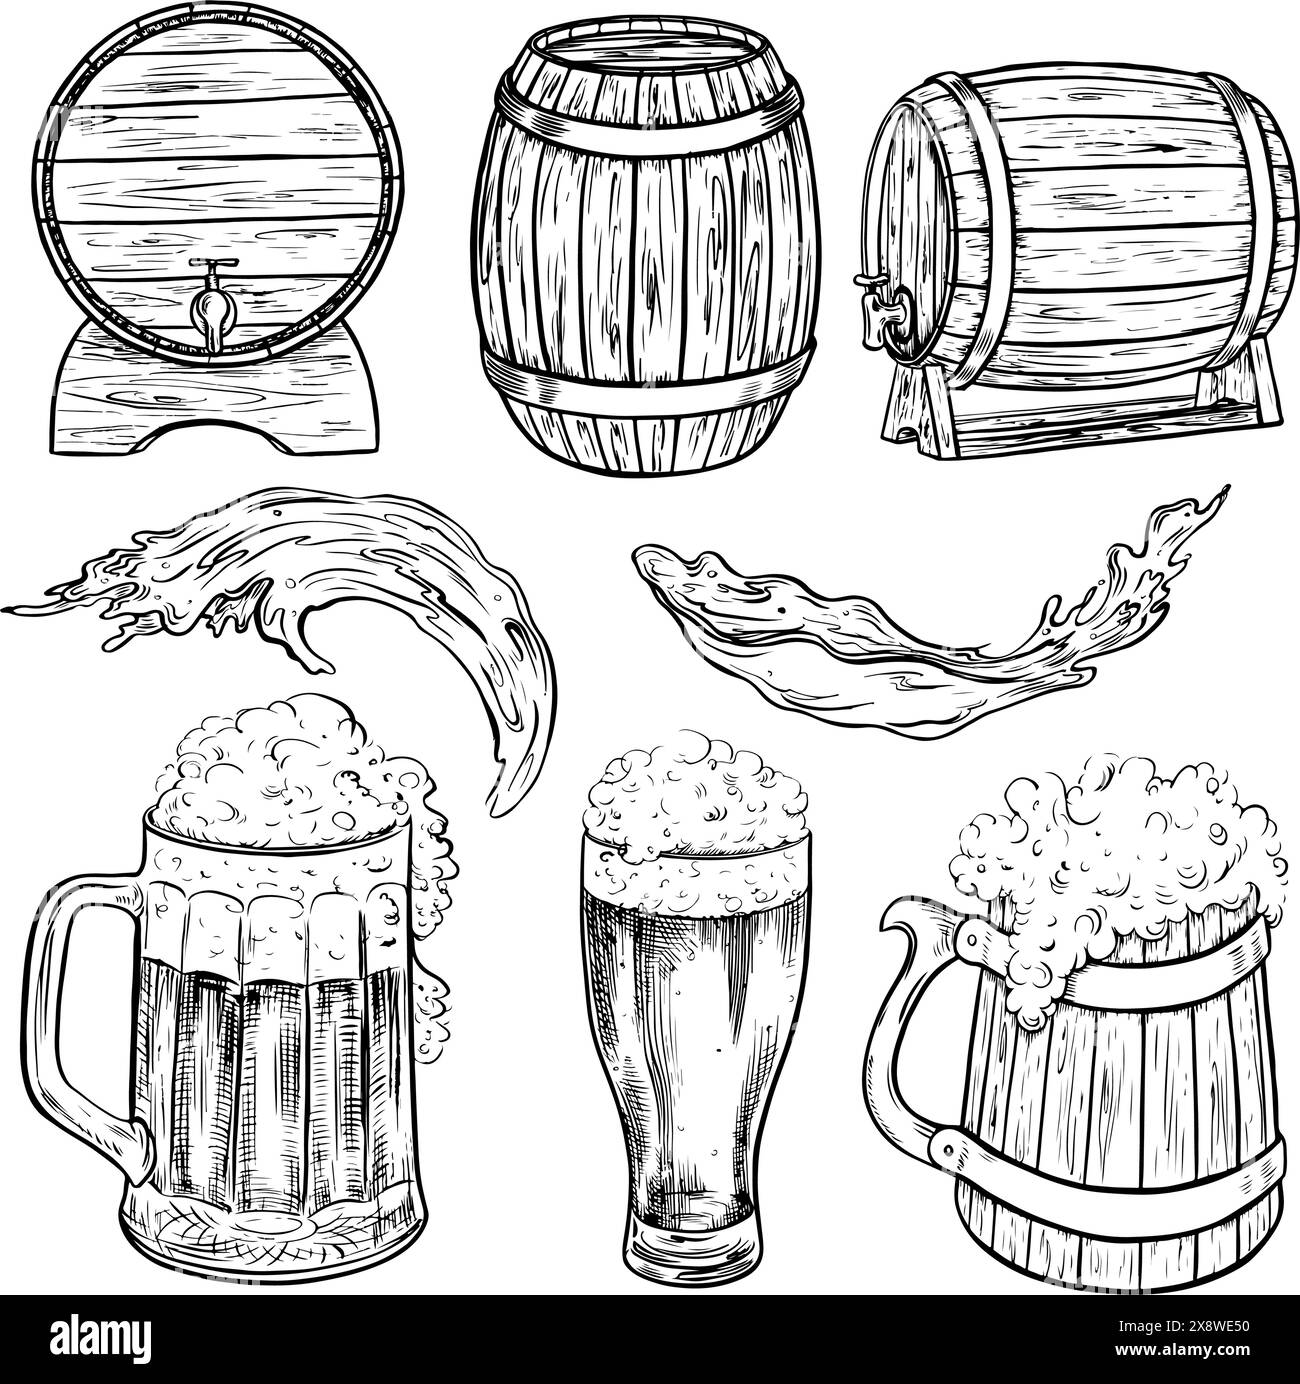 Botti di legno e tazze da birra. Illustrazioni disegnate a mano con grafica vettoriale in bianco e nero. Elementi di clipart per la progettazione di etichette, imballaggi, Illustrazione Vettoriale